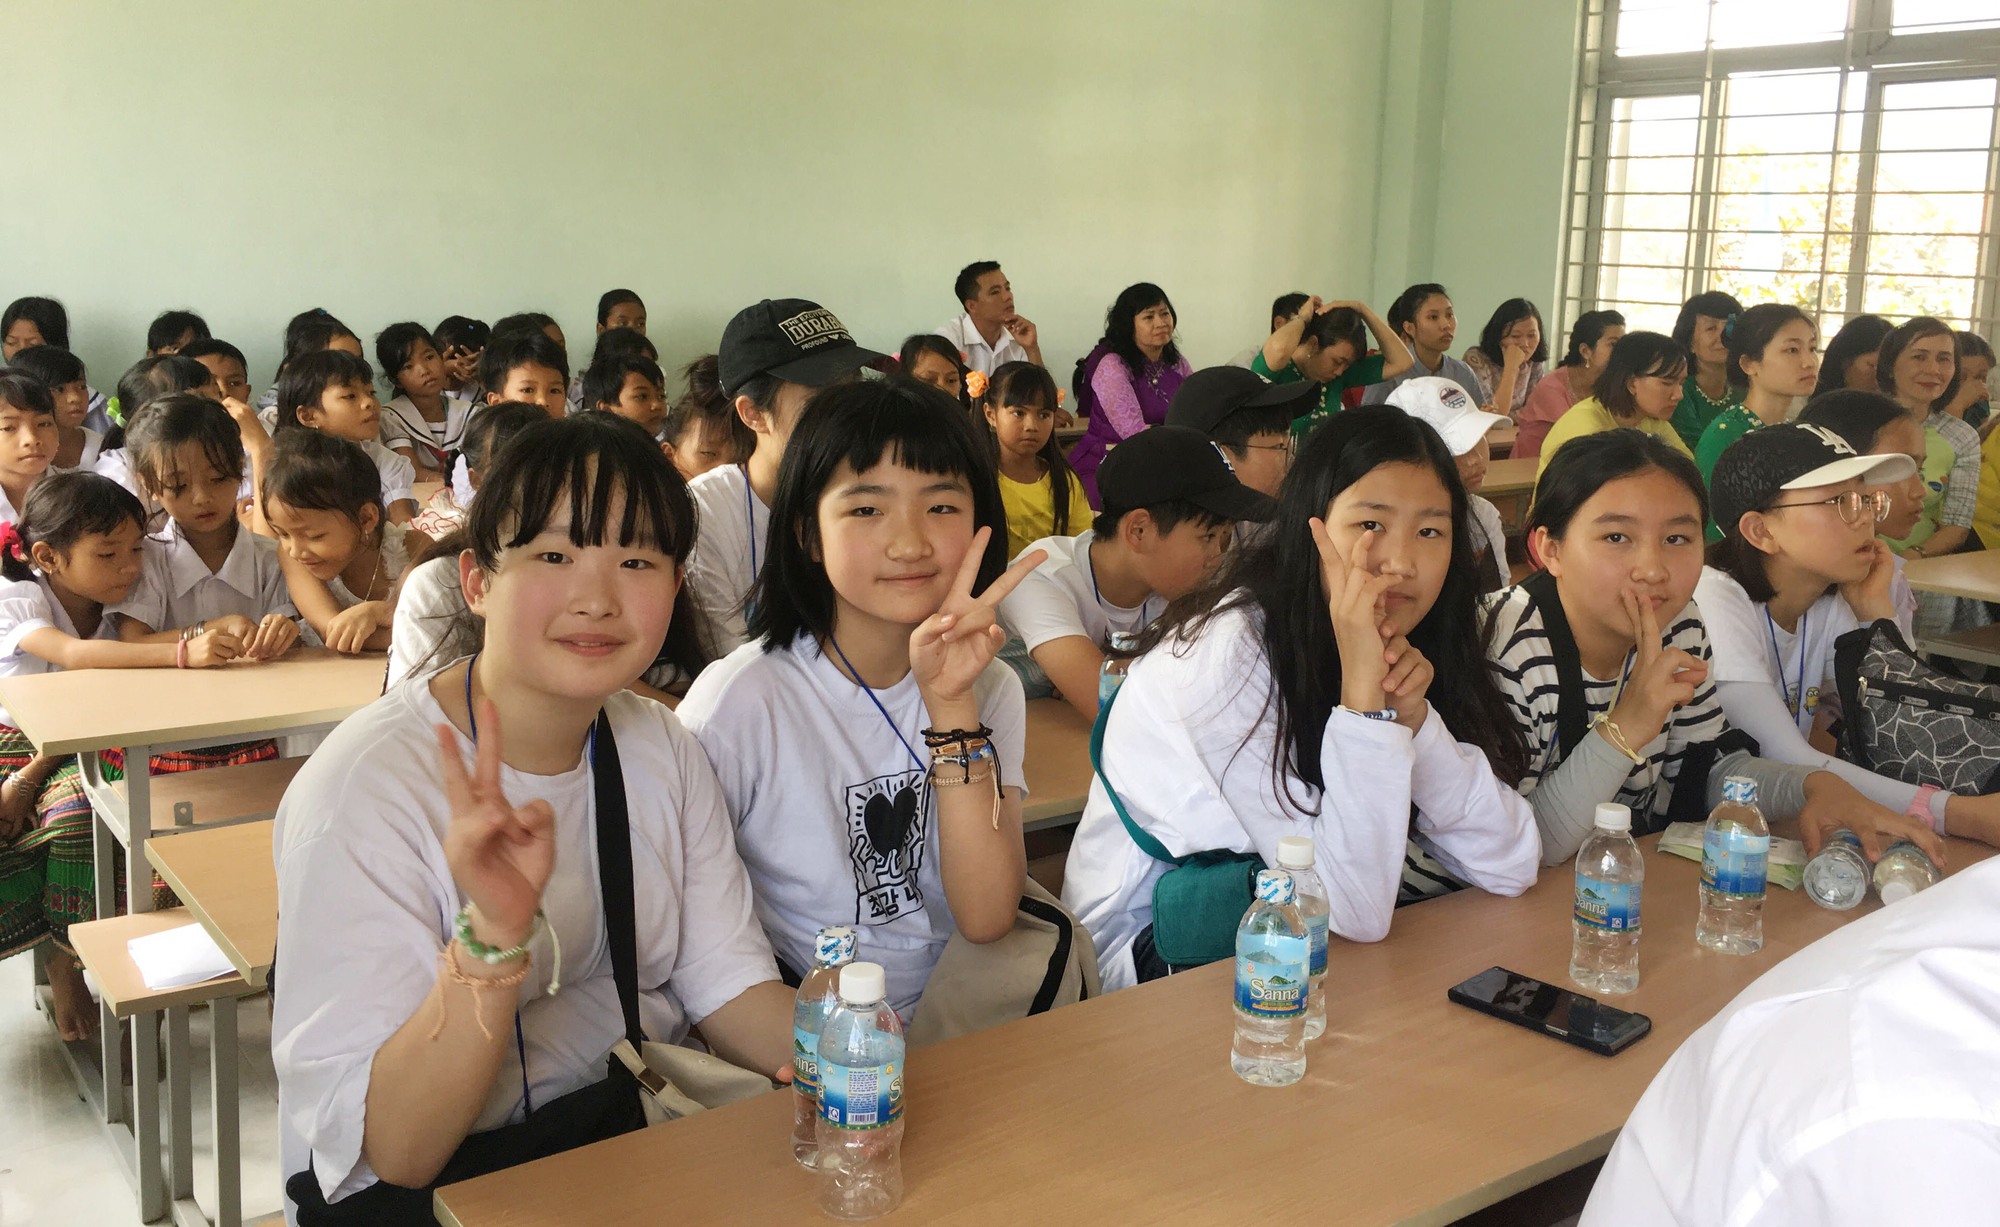 Ngôi trường tên Jeju và chuyện học sinh Raglai đi Hàn Quốc - Ảnh 3.